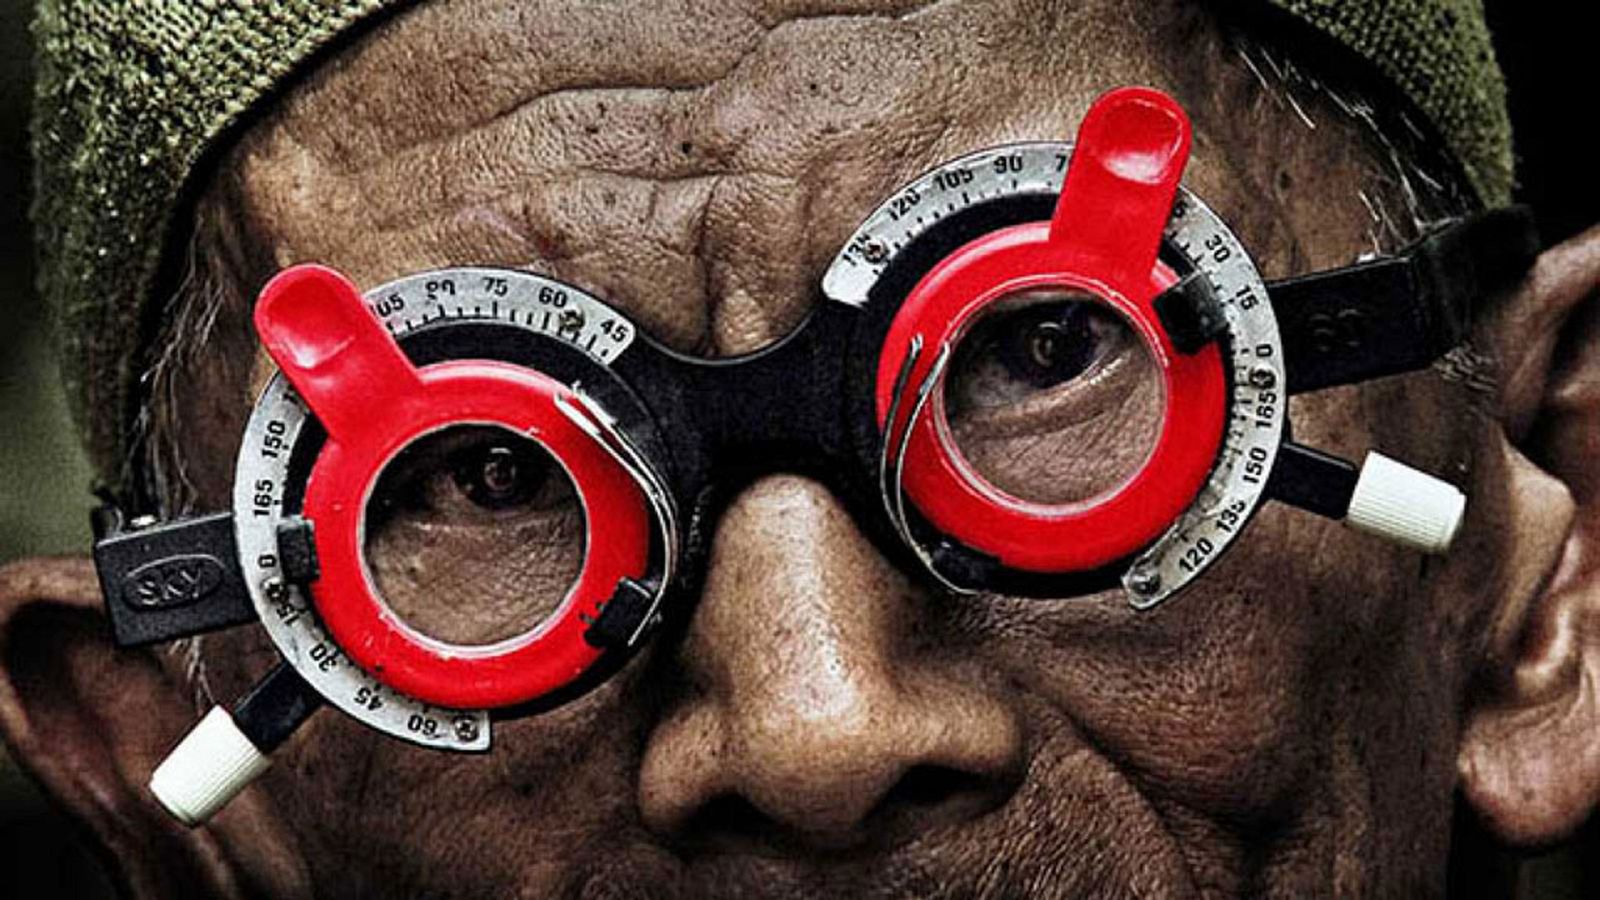 Somos documentales - La mirada del silencio - Documental en RTVE